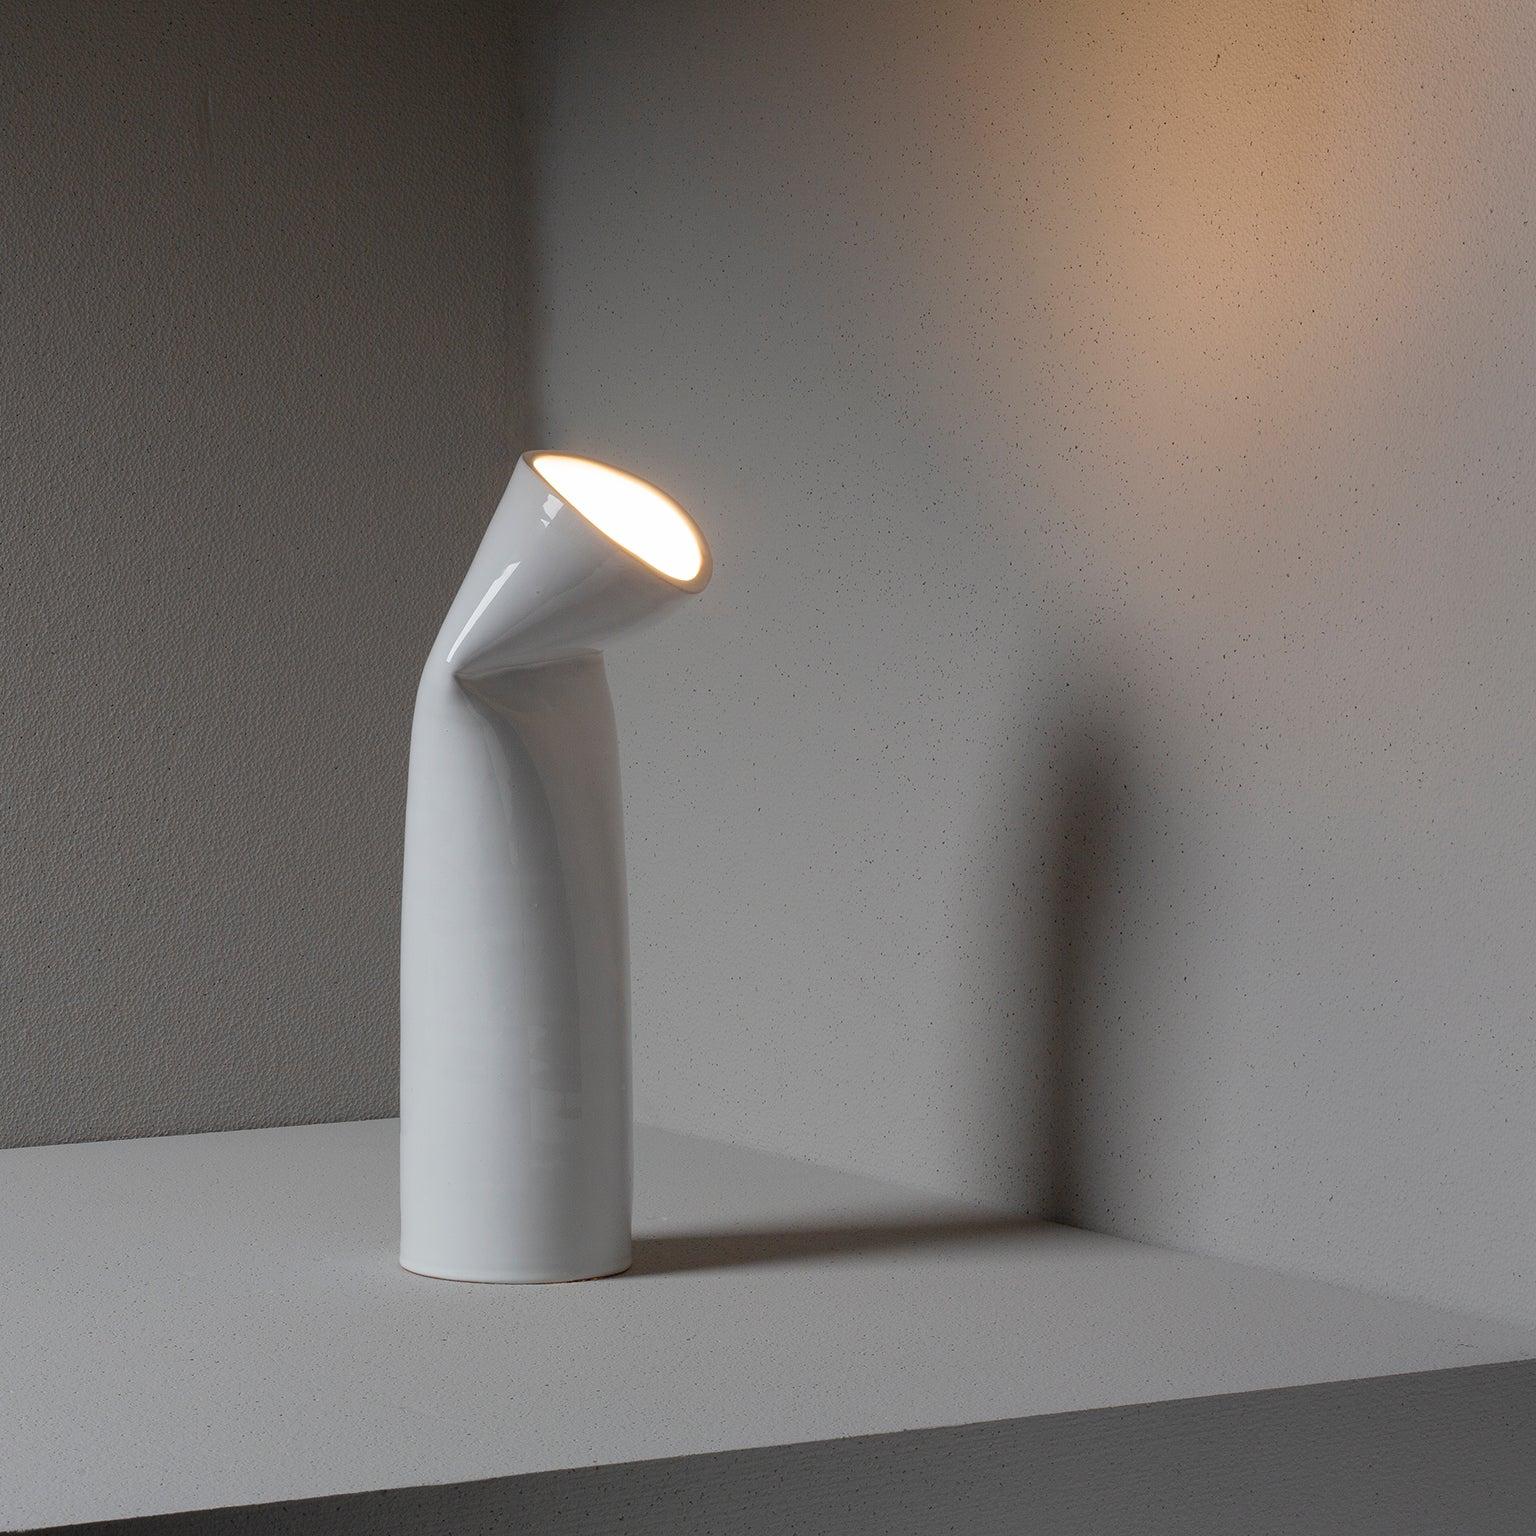 Lampe de table en céramique, le vase lumineux est fabriqué au tour et sculpté à la main. Accessoire d'ameublement qui met en valeur la nature plastique de la matière fixée par la cuisson. Il utilise une simple ampoule LED de 7V.
Disponible dès